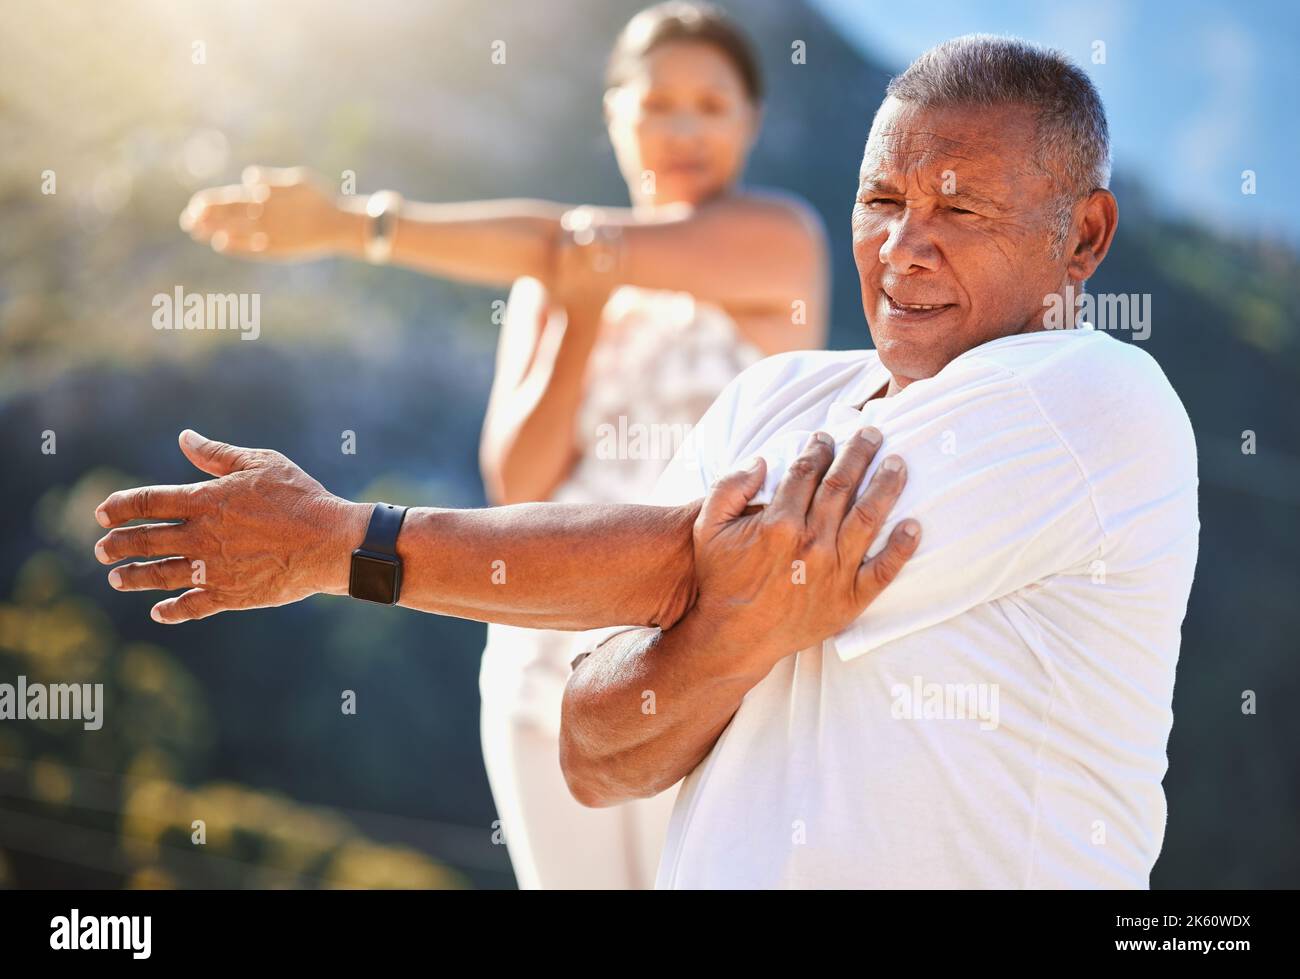 Uomo anziano che allunga le braccia mentre si esercita all'aperto in una giornata di sole. Persone mature che praticano lo yoga insieme in natura rimanendo sane e attive Foto Stock